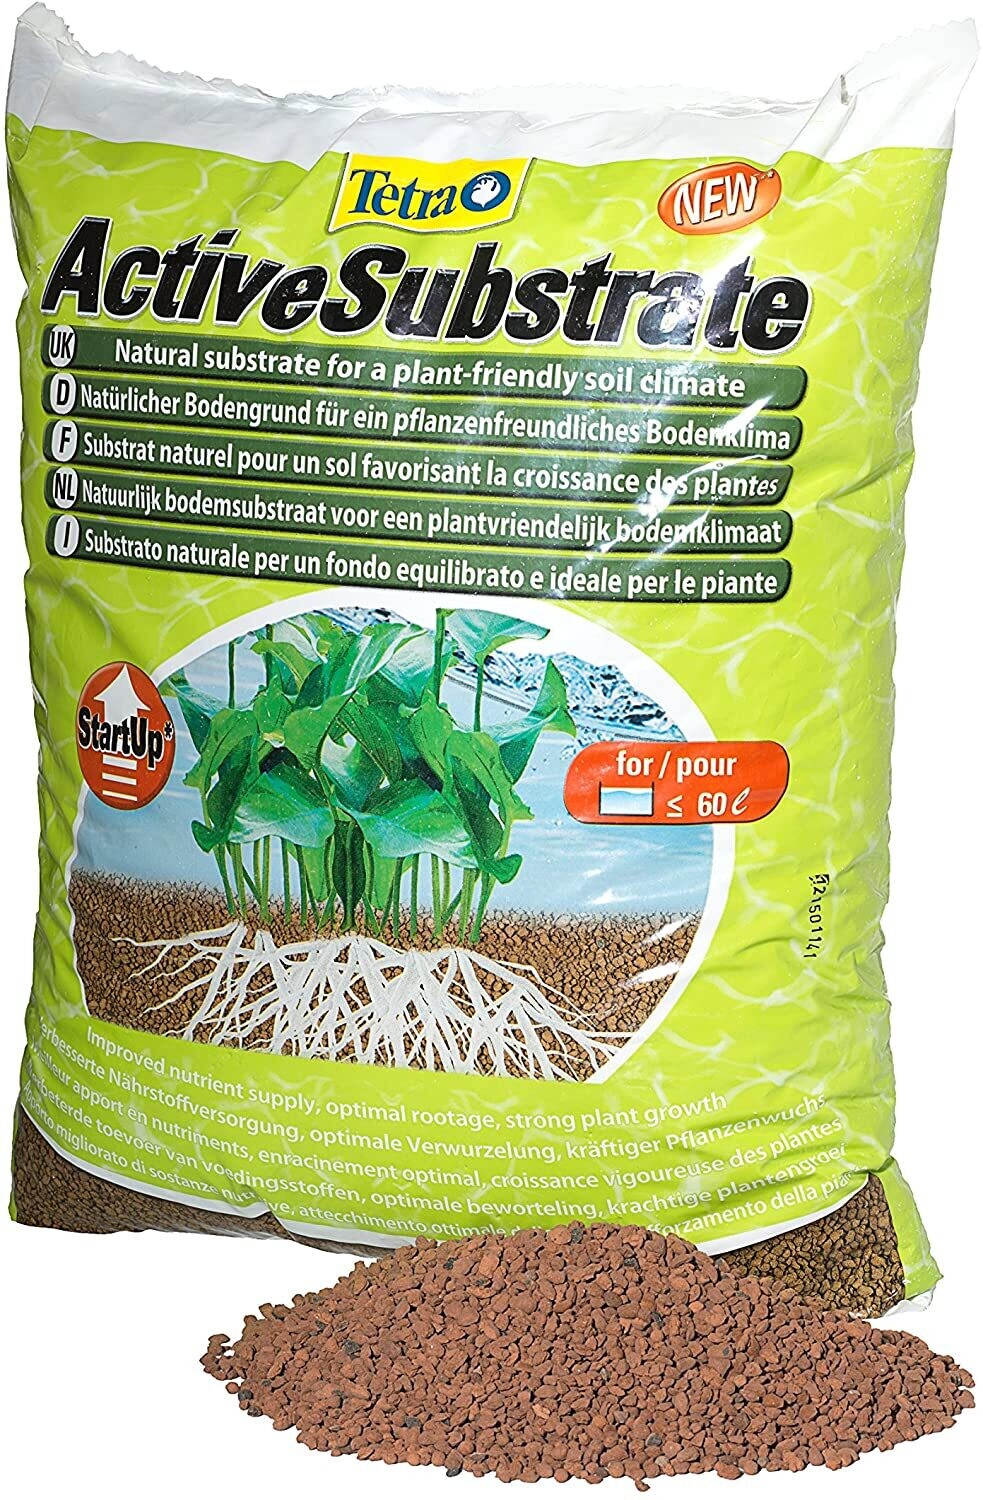 Tetra ActiveSubstrate 6 L - Natürlicher Bodengrund